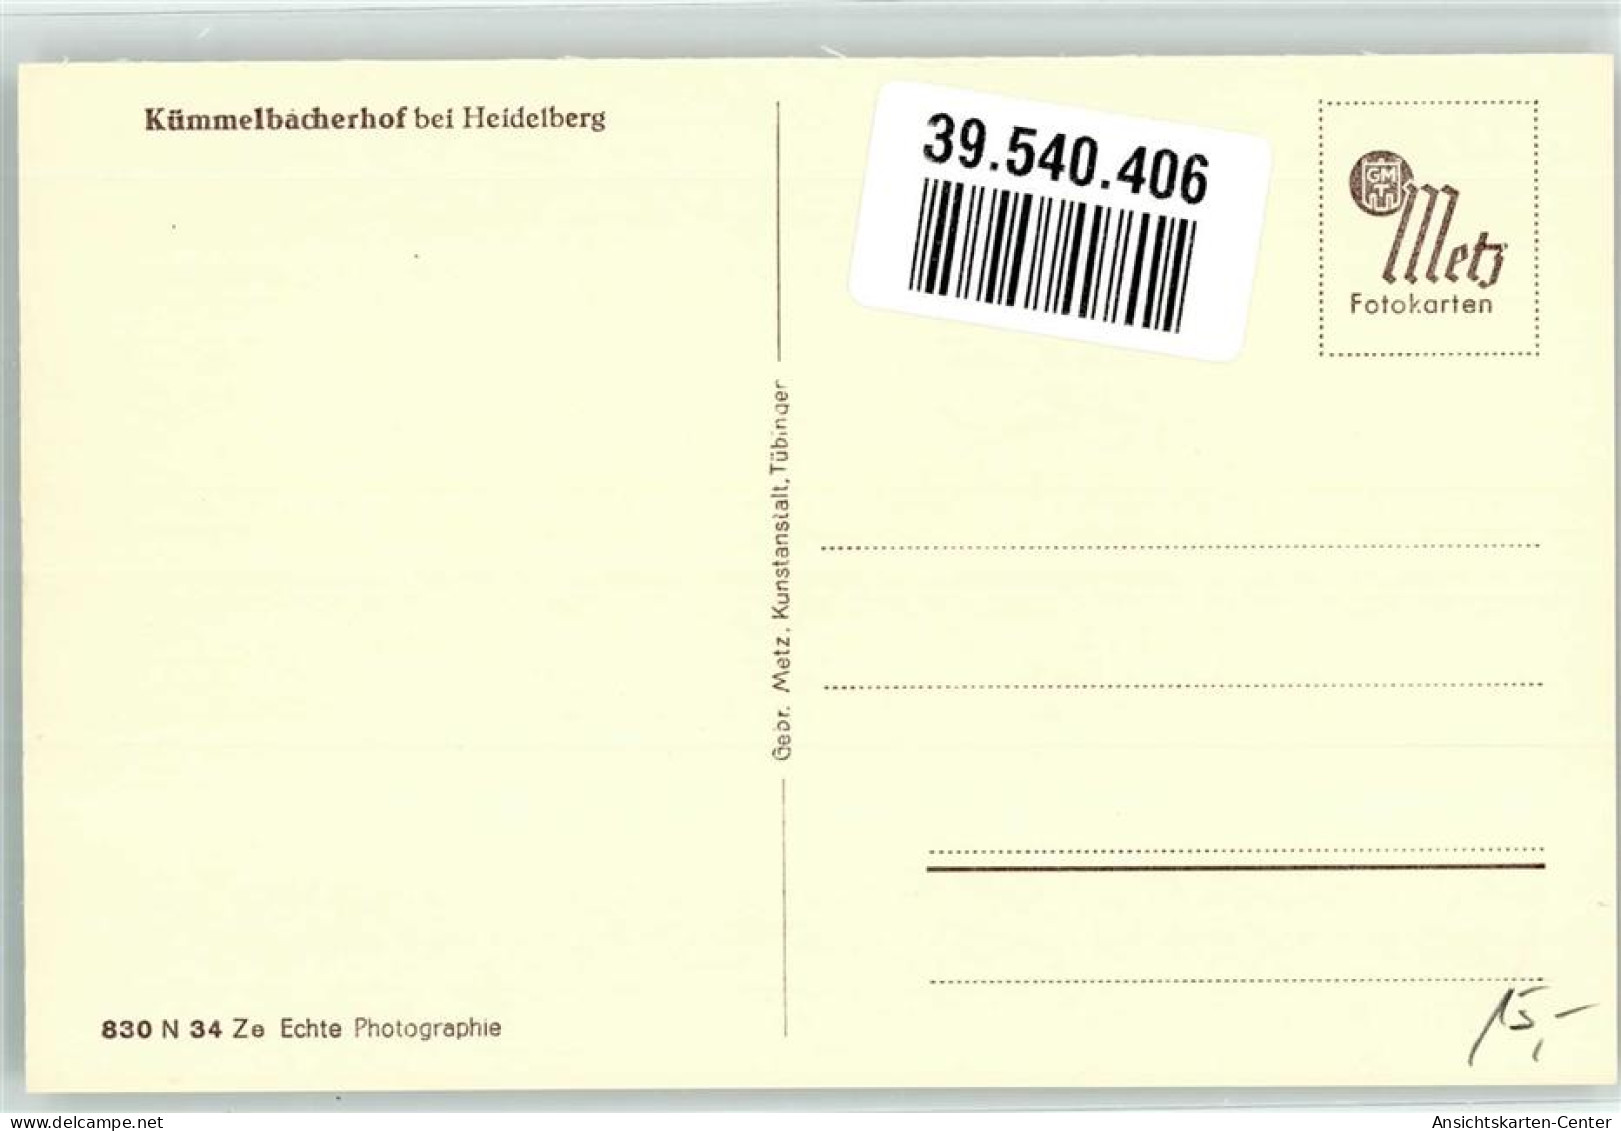 39540406 - Neckargemuend - Neckargemuend